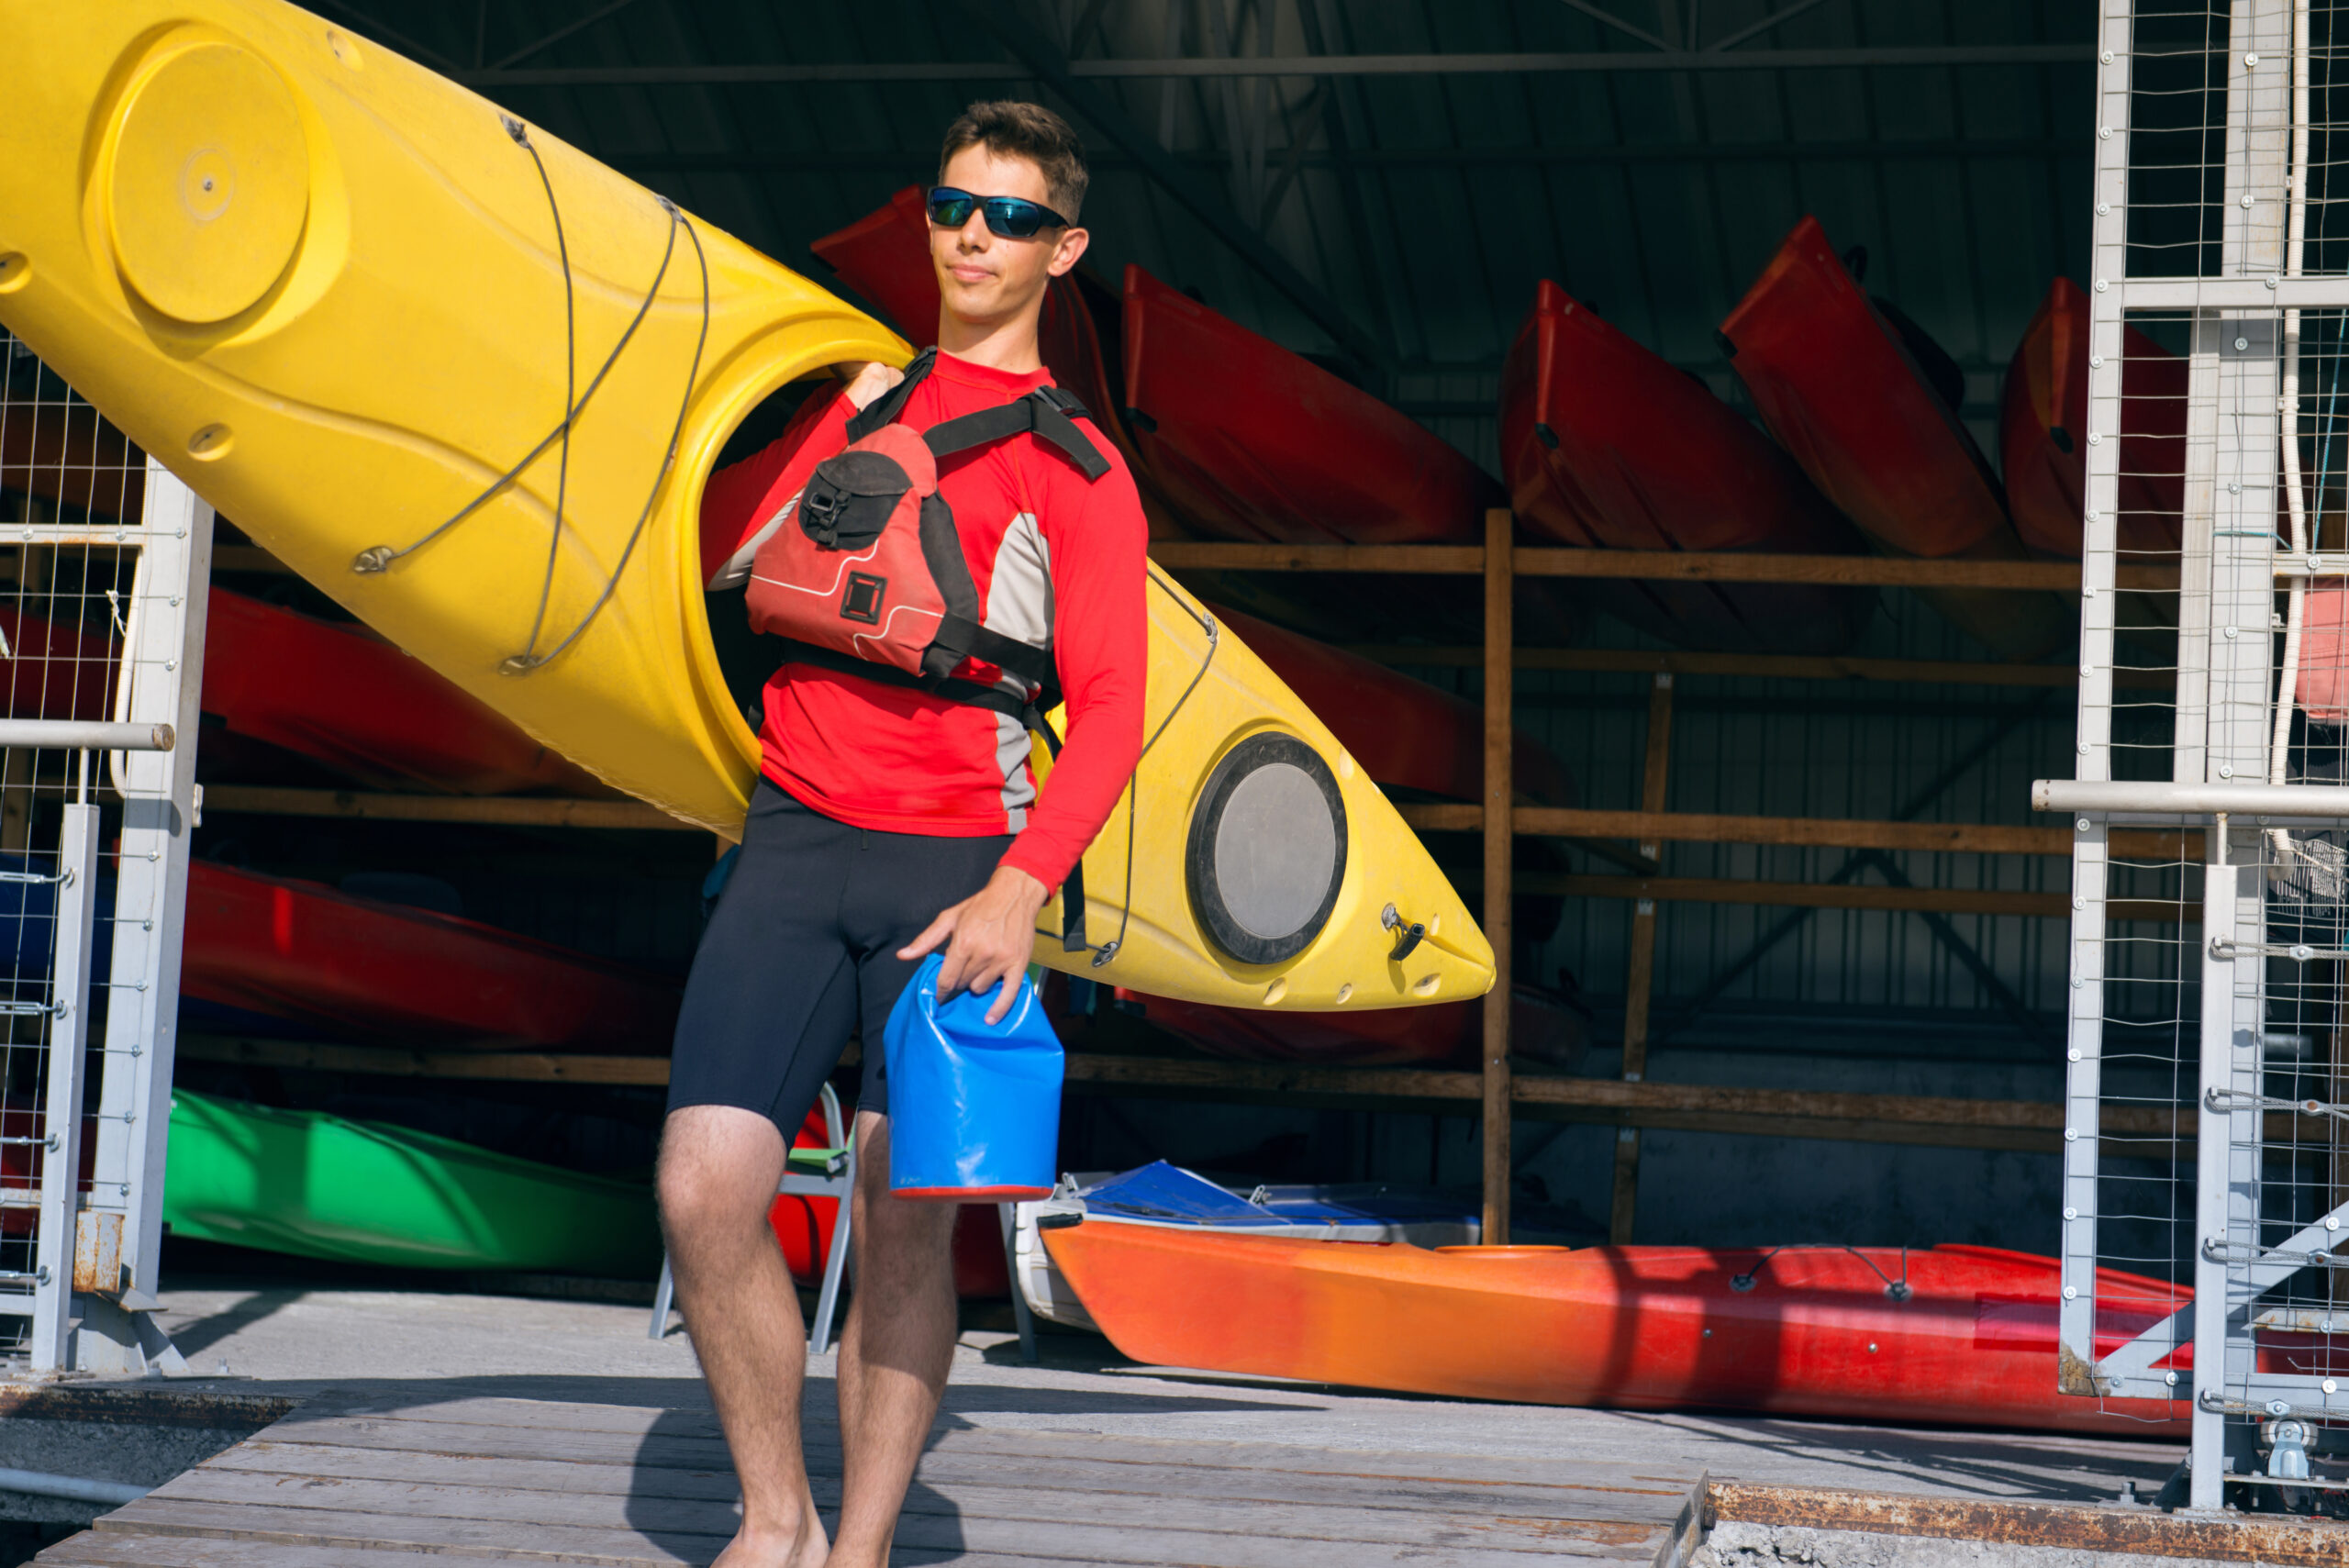 man holding kayak